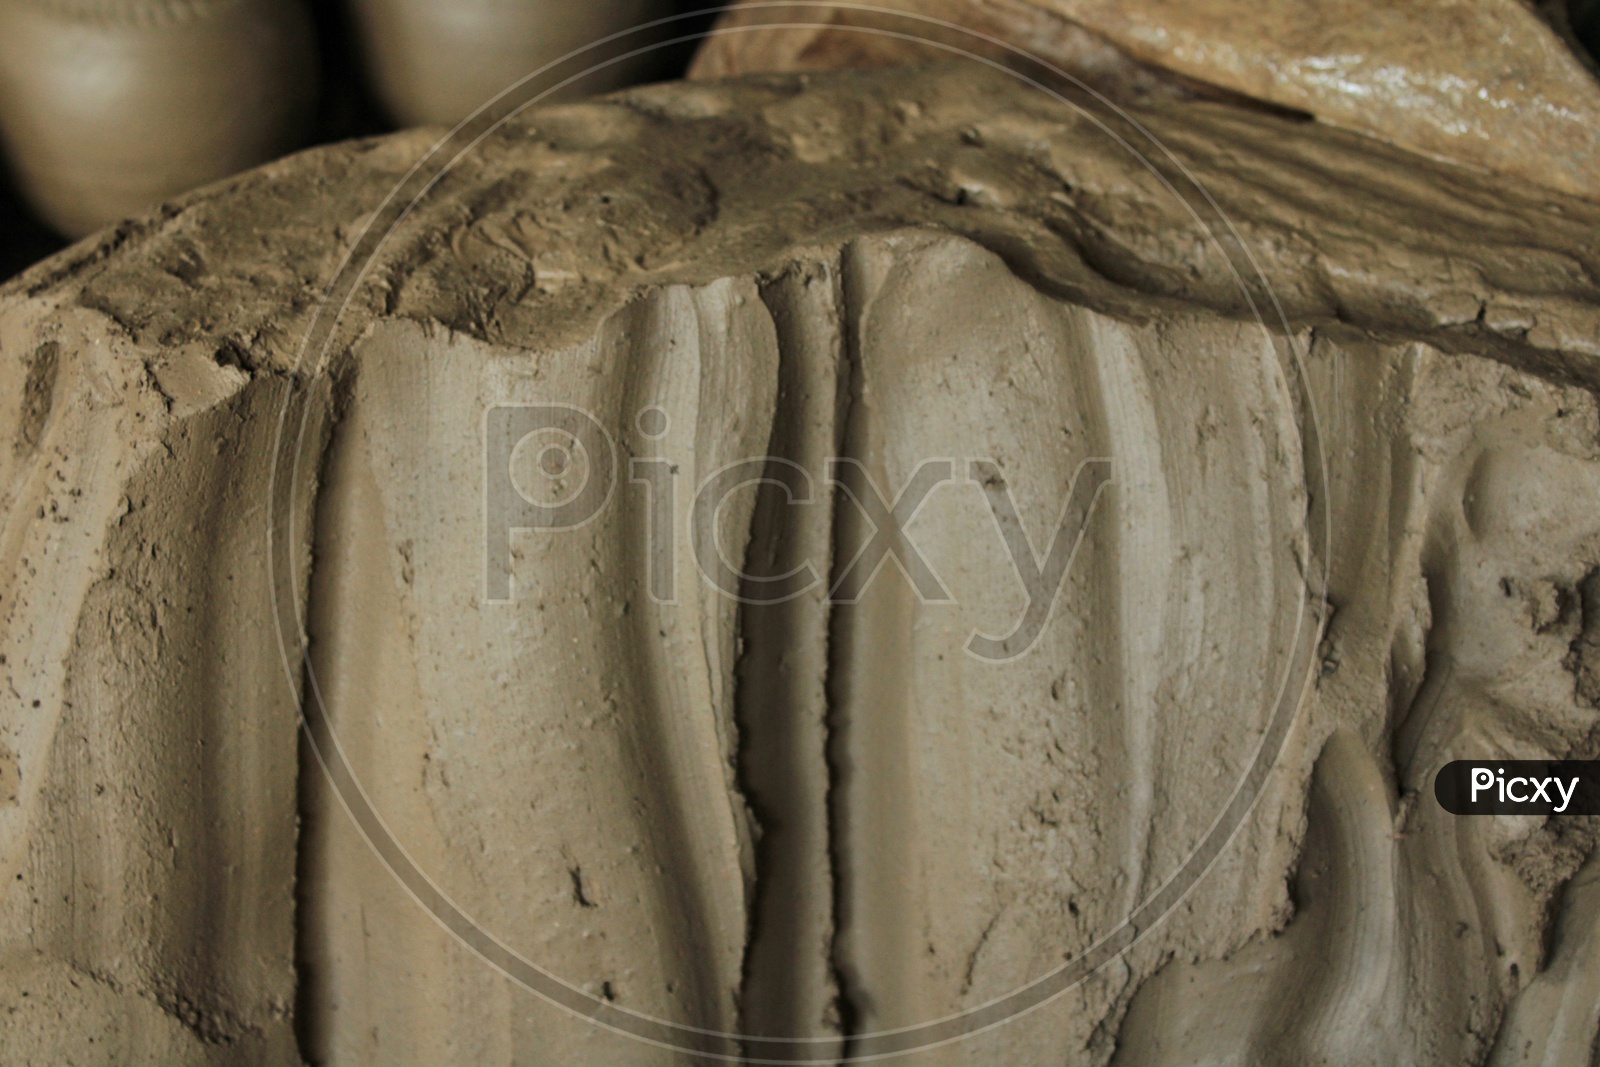 Pottery mud